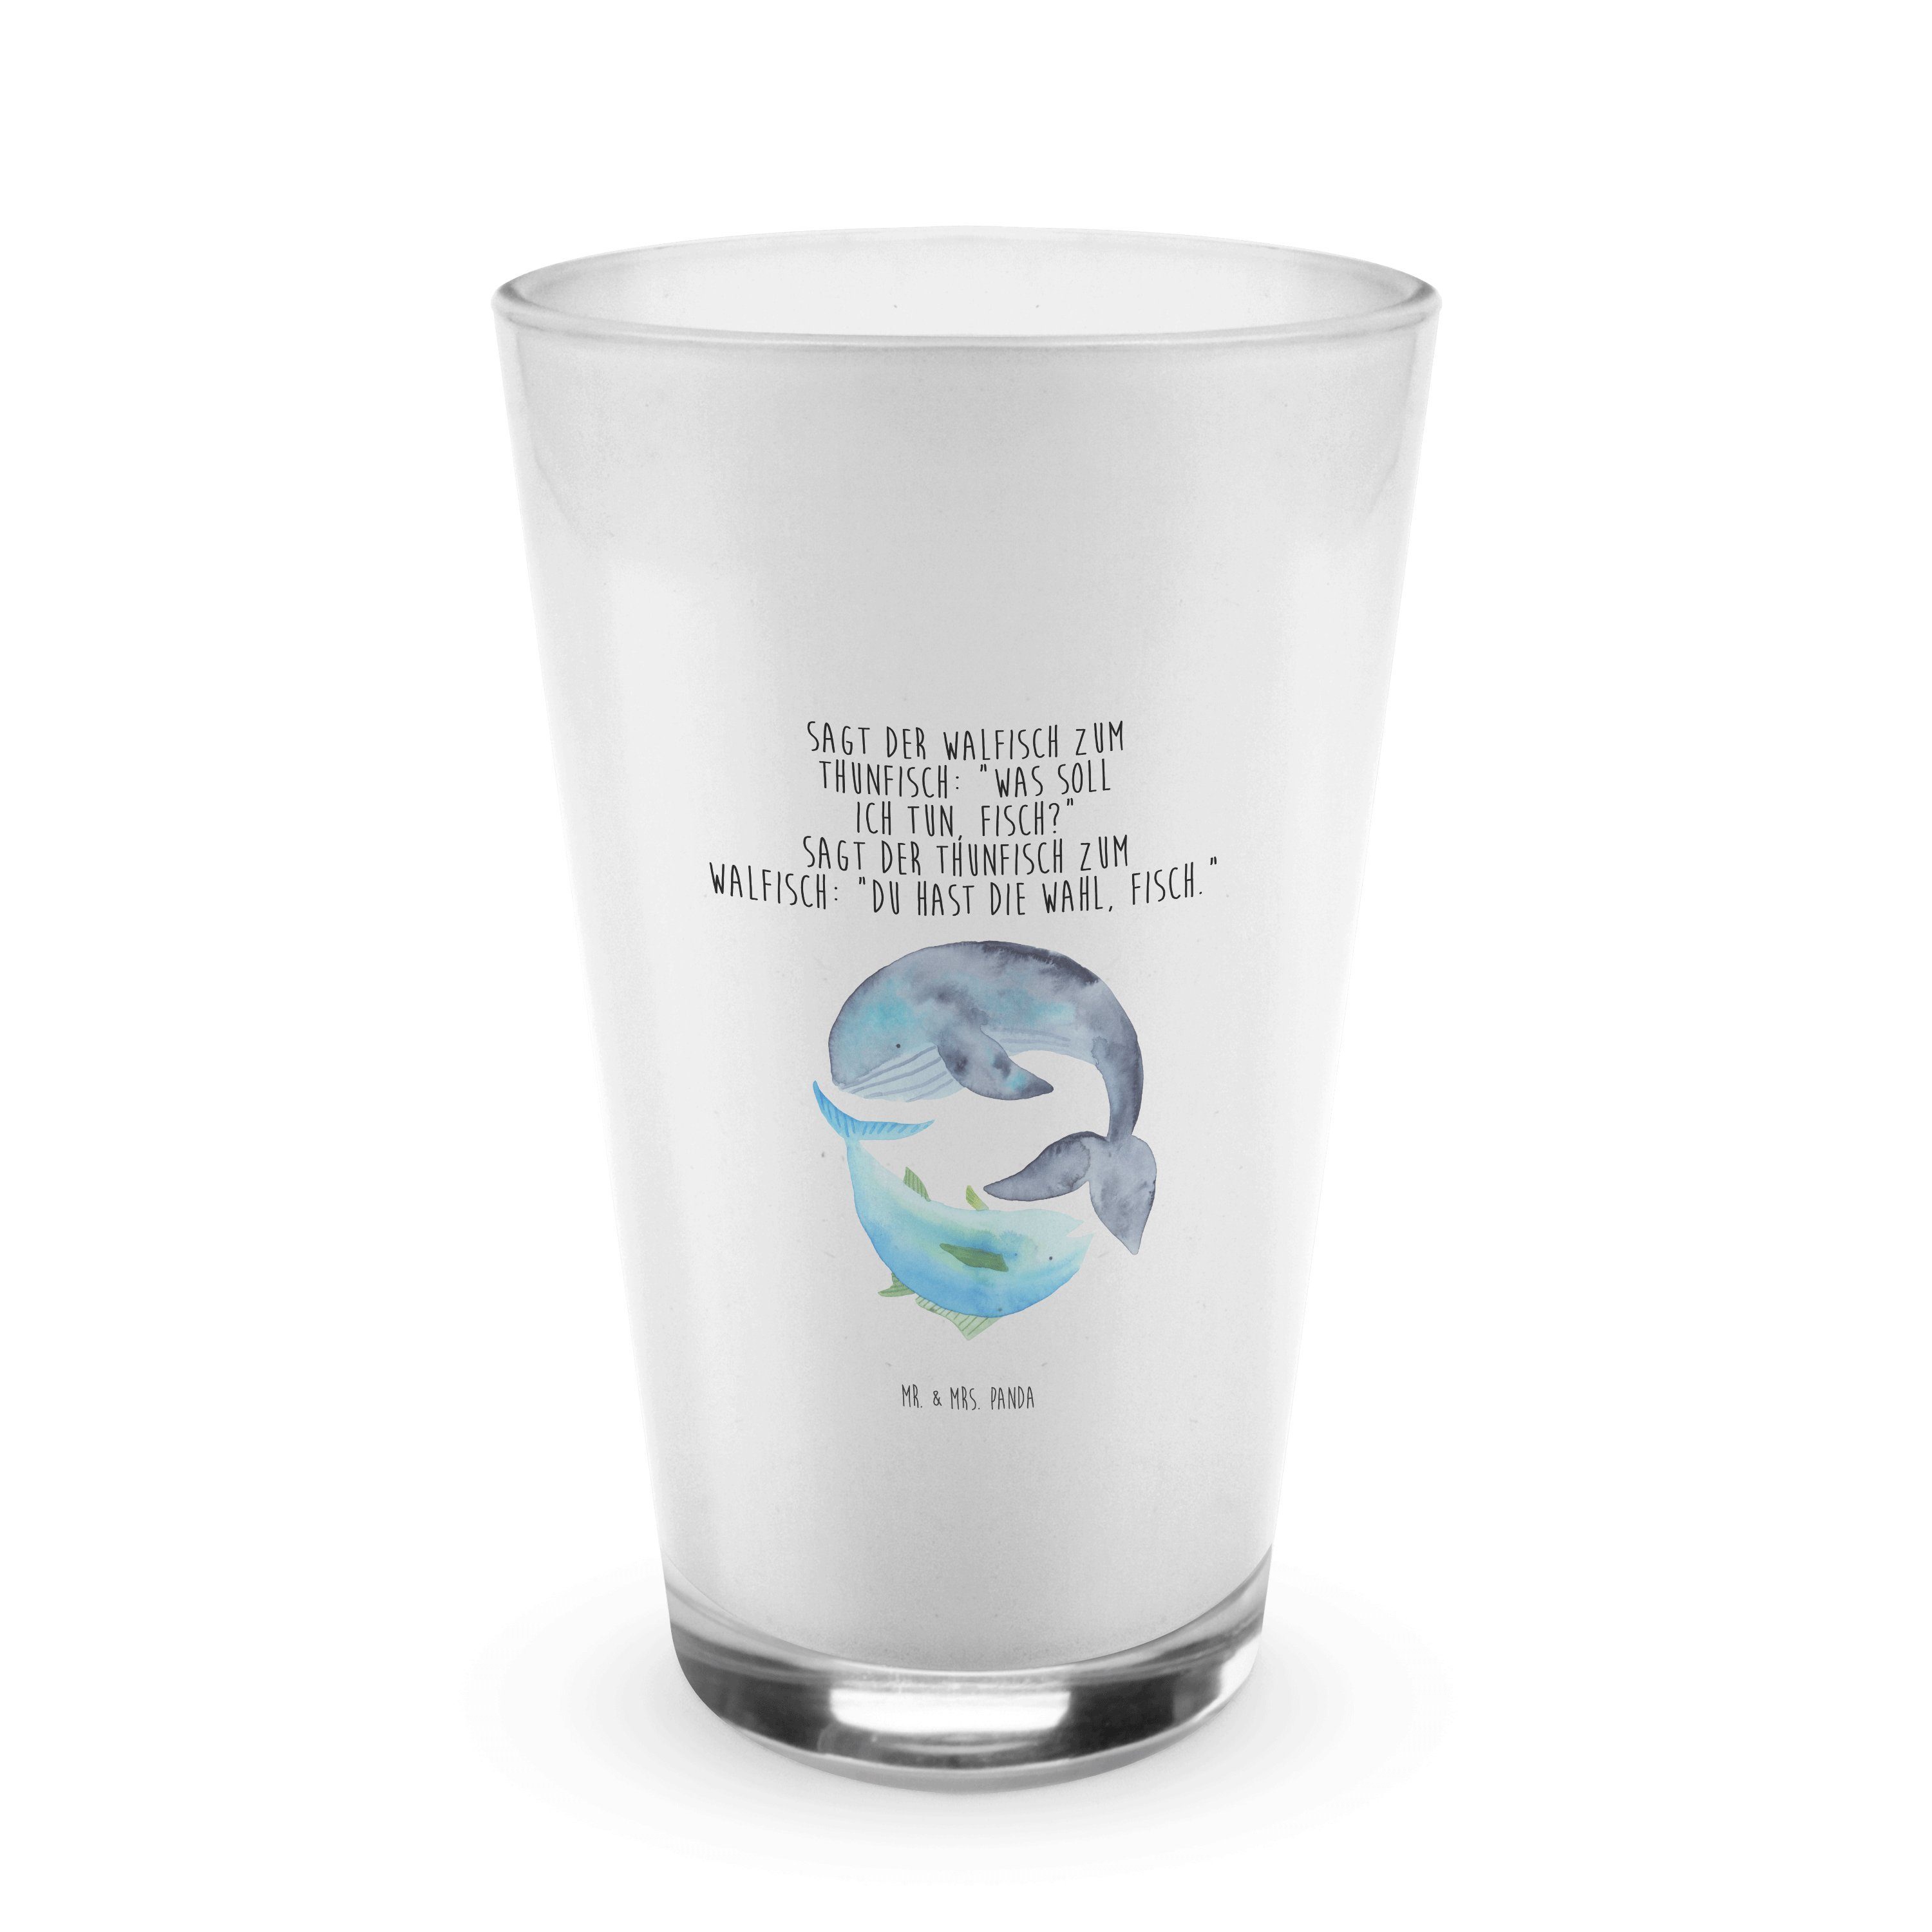 Mr. & Mrs. Panda Glas Walfisch & Thunfisch - Transparent - Geschenk, lustige Sprüche, Flach, Premium Glas | Gläser